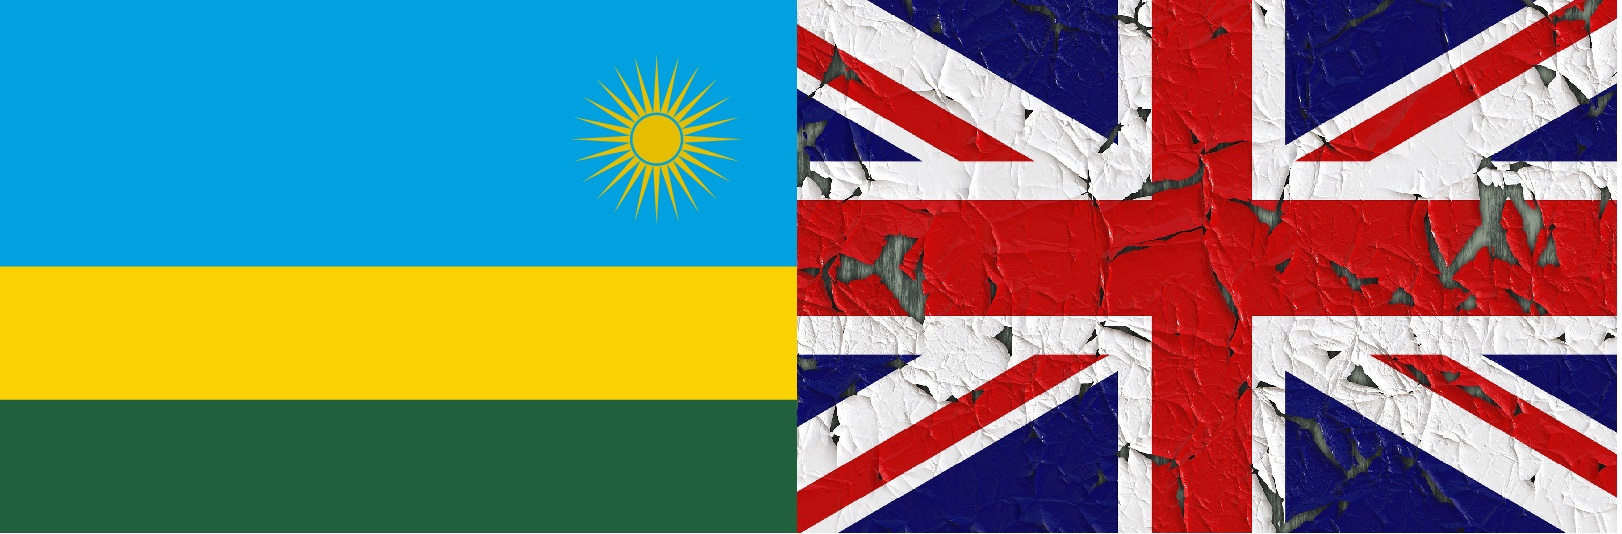 اتفاقية بملايين الدولارت لإرسال طالبي اللجوء في بريطانيا إلى رواندا وتنديدات دولية